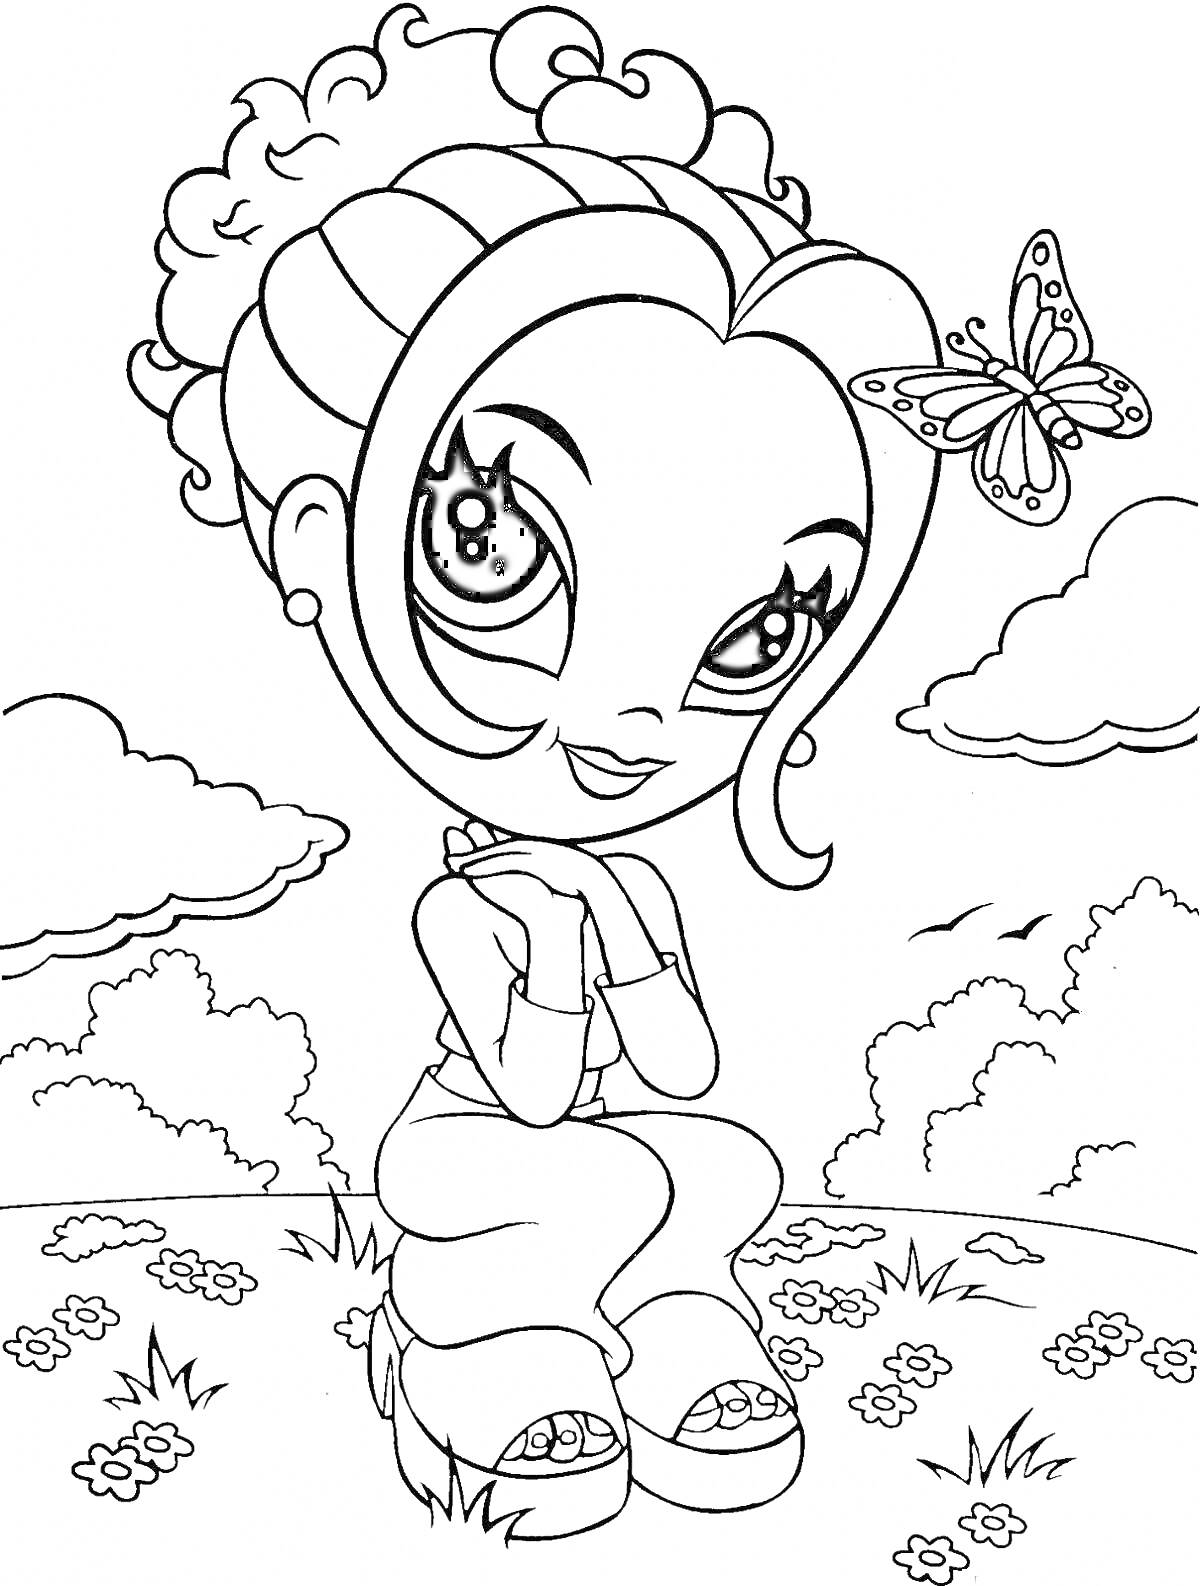 Девочка с закрученными волосами и бабочкой на голове на фоне природы